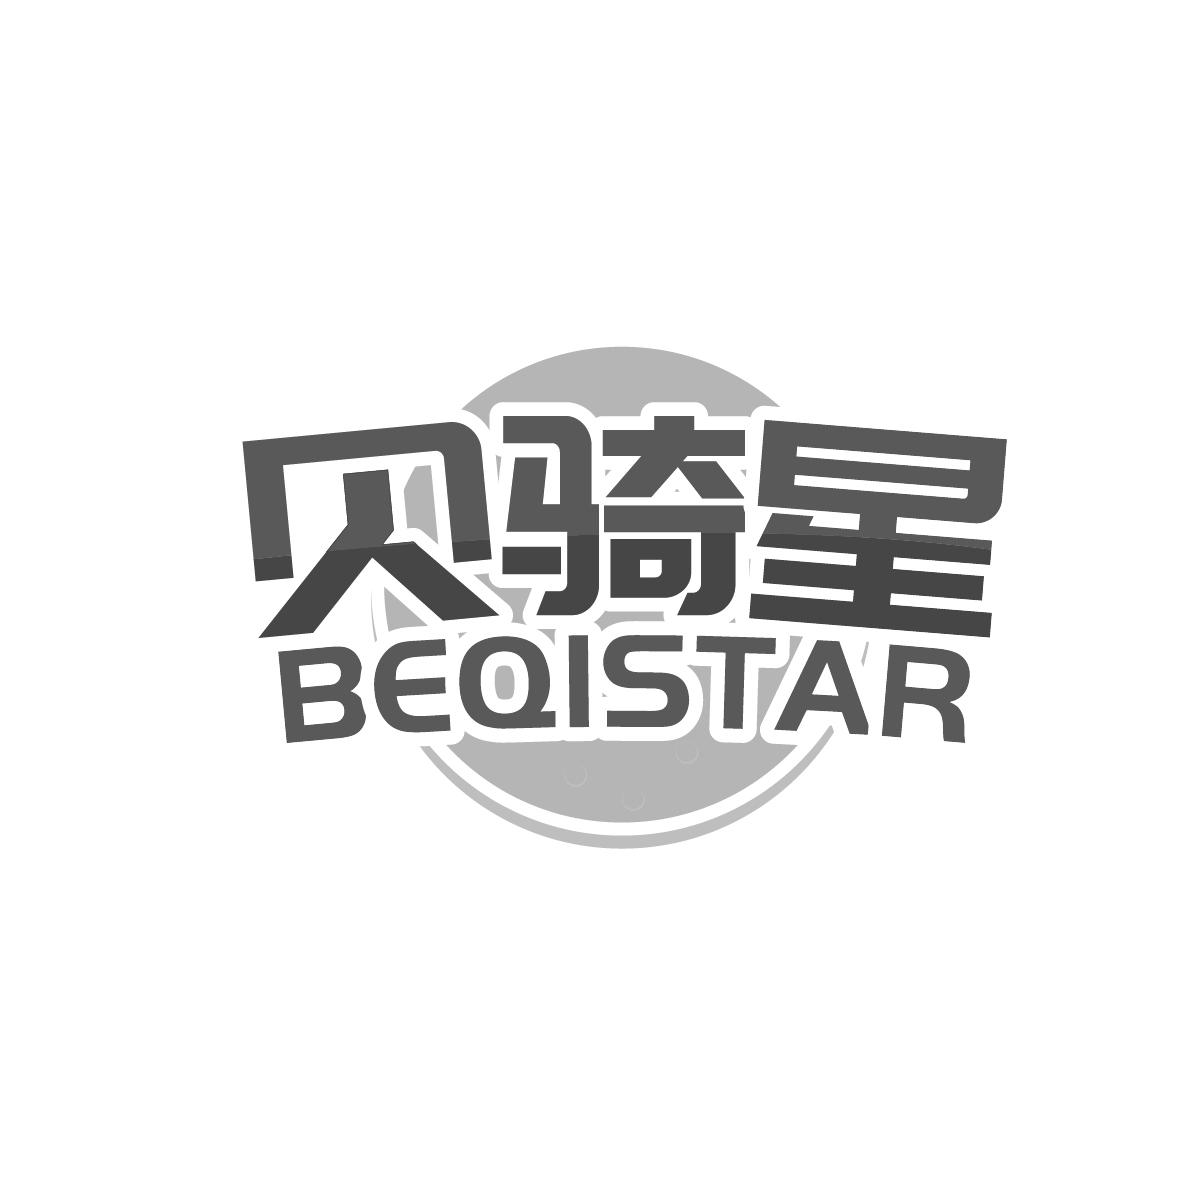 12类-运输装置贝骑星 BEQISTAR商标转让